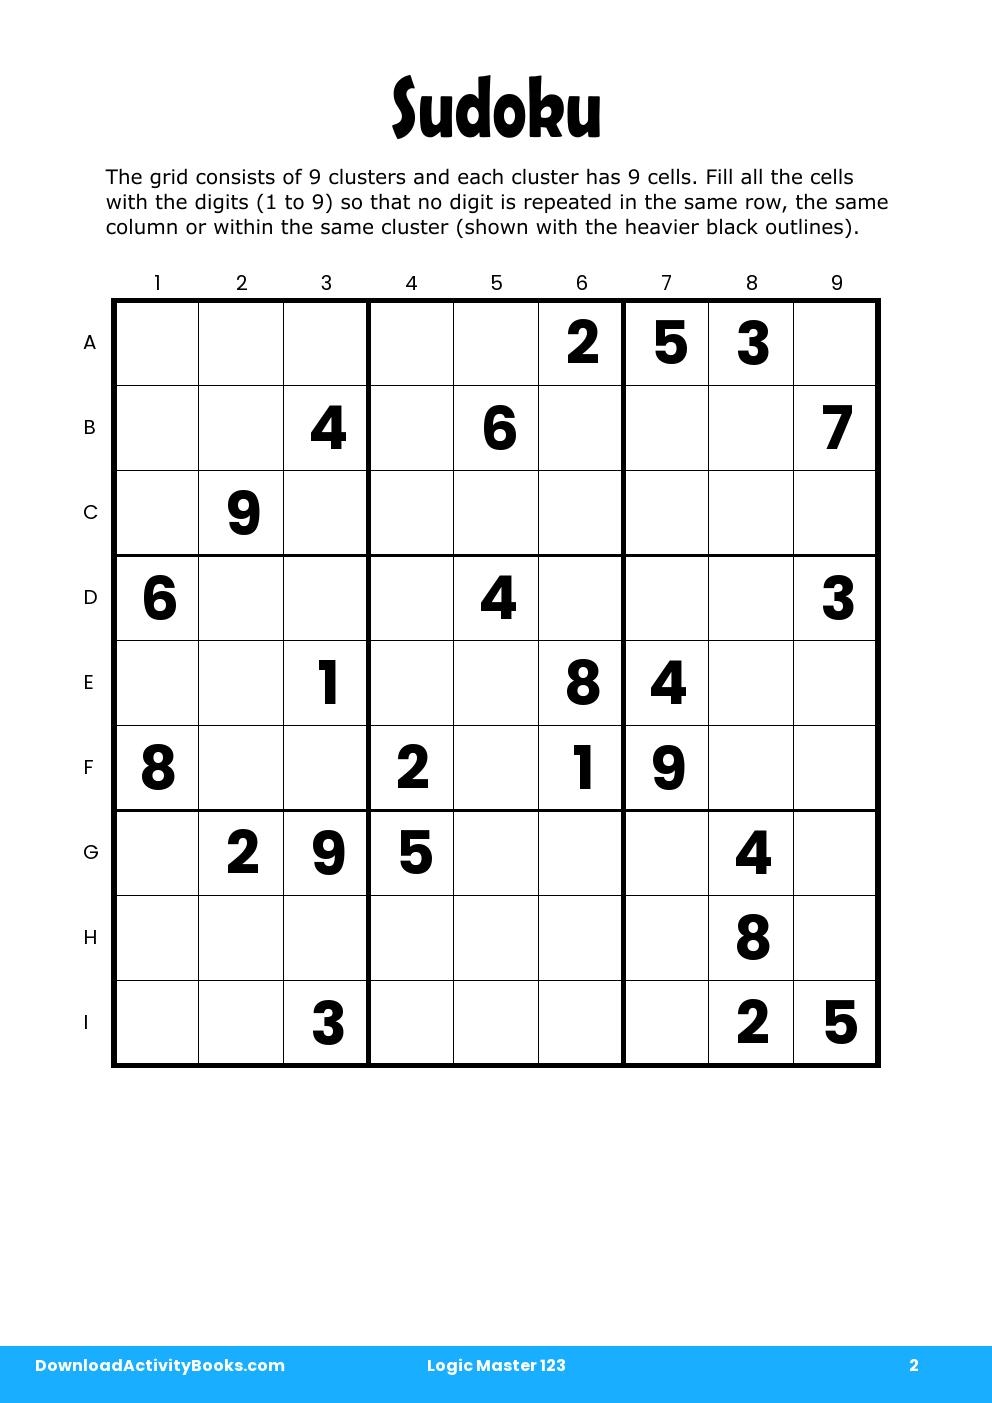 Sudoku in Logic Master 123